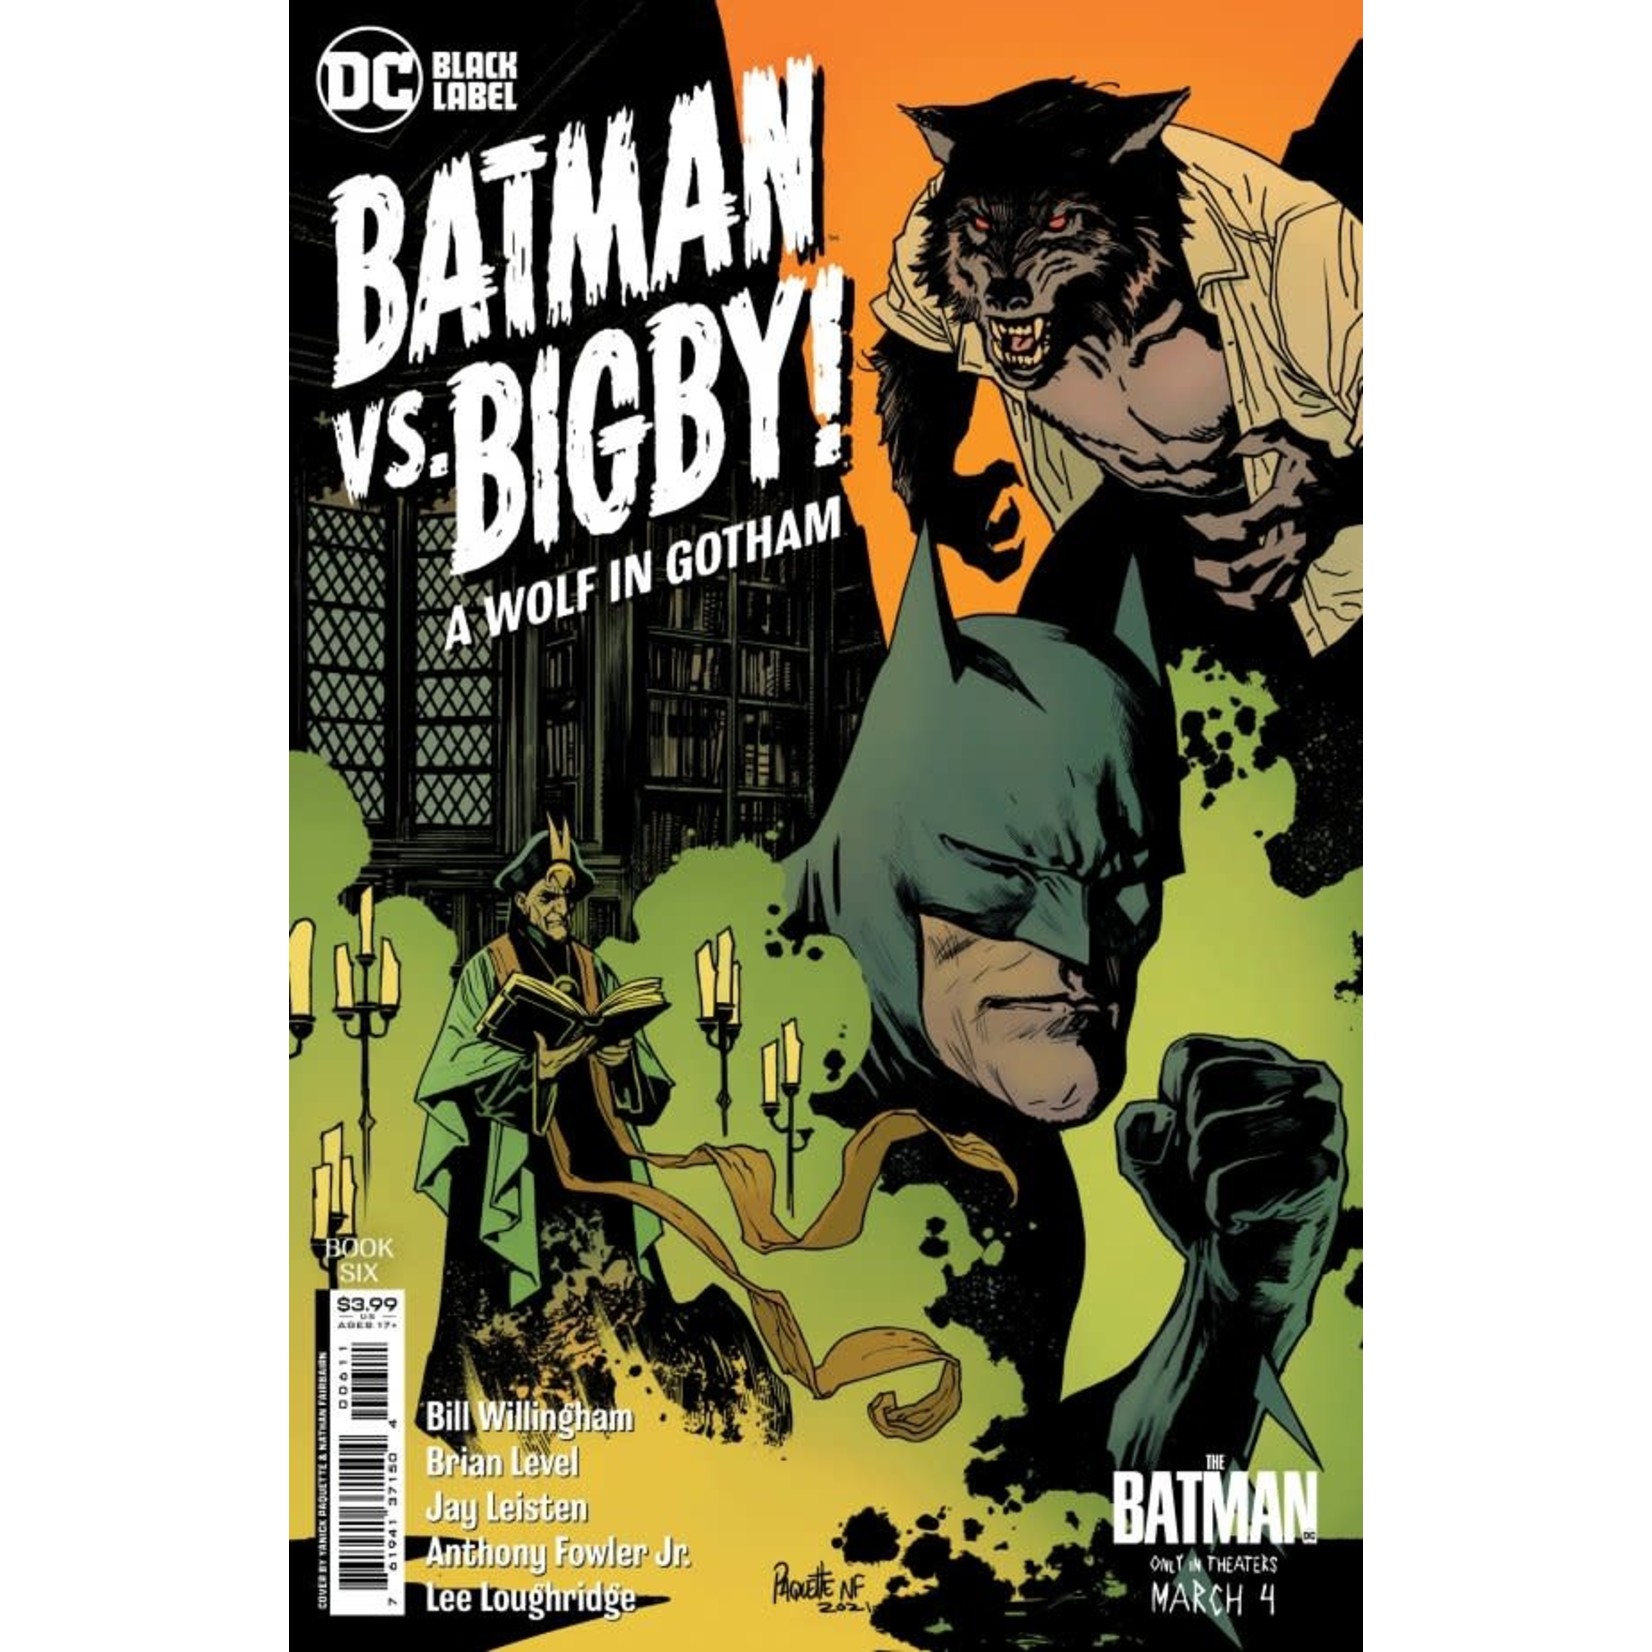 DC Comics Batman vs. Bigby! A Wolf in Gotham #6